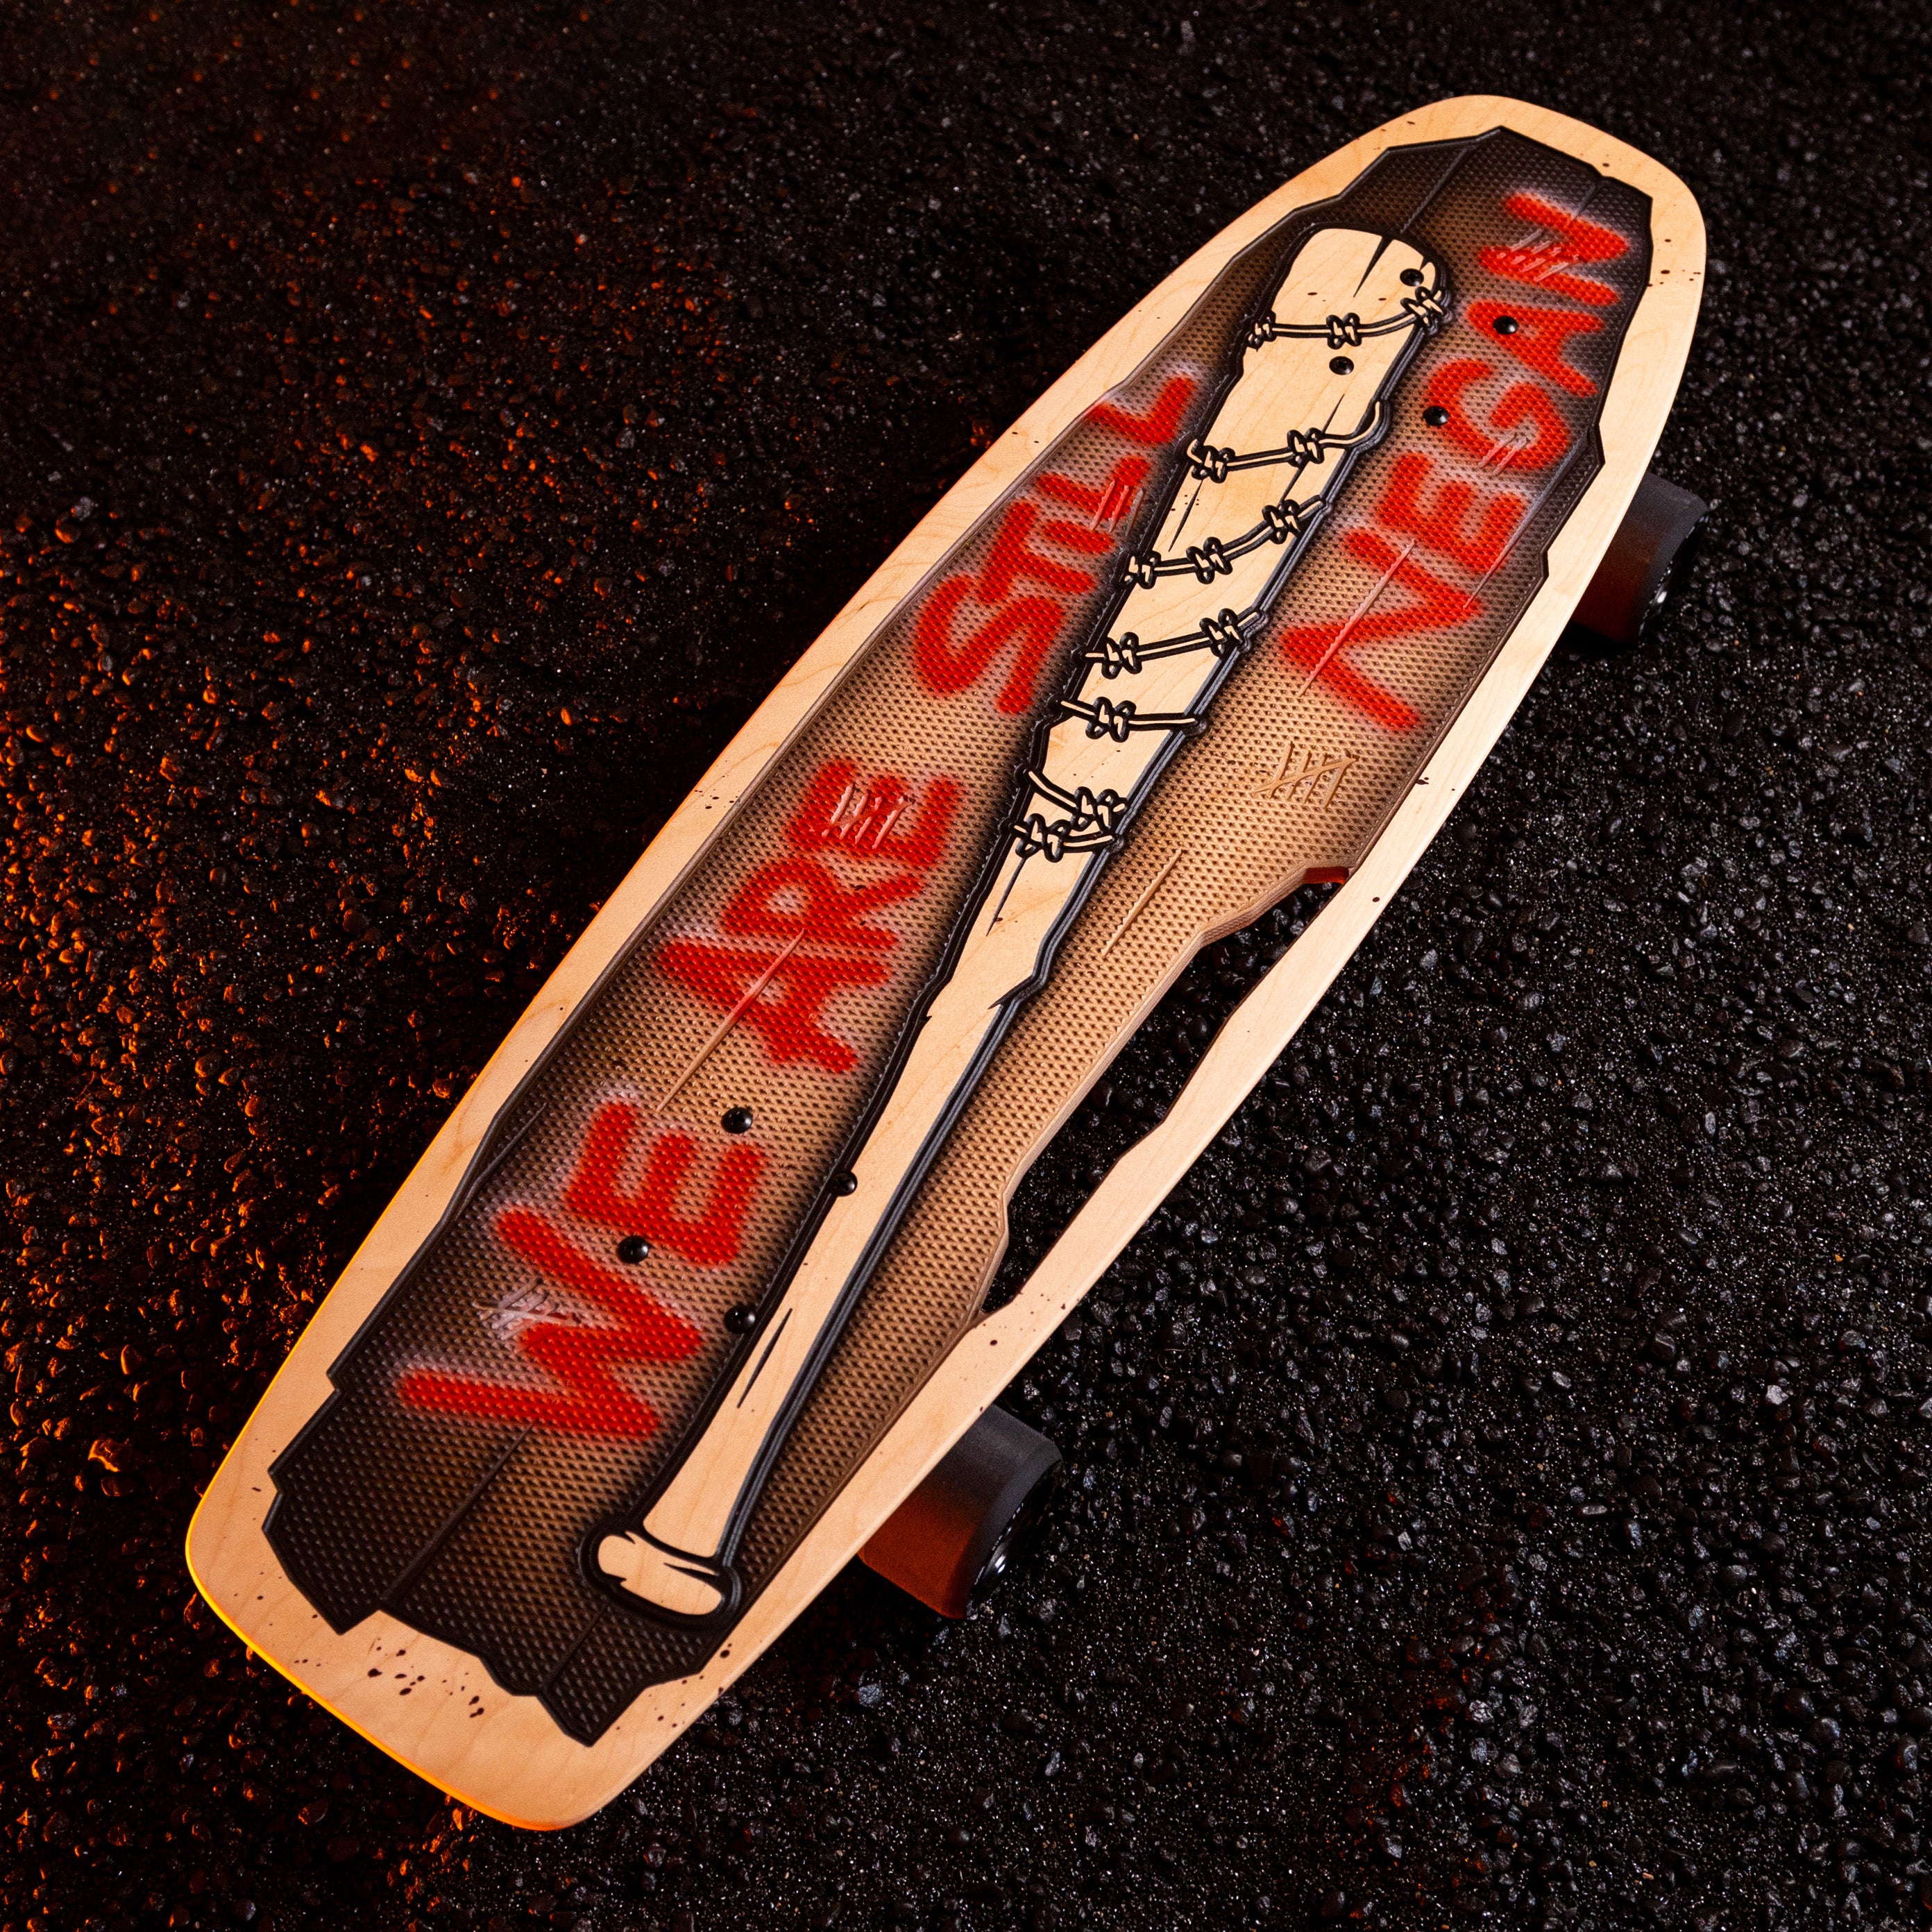 The Walking Dead x Bear Walker Boards Negan Skateboard-1